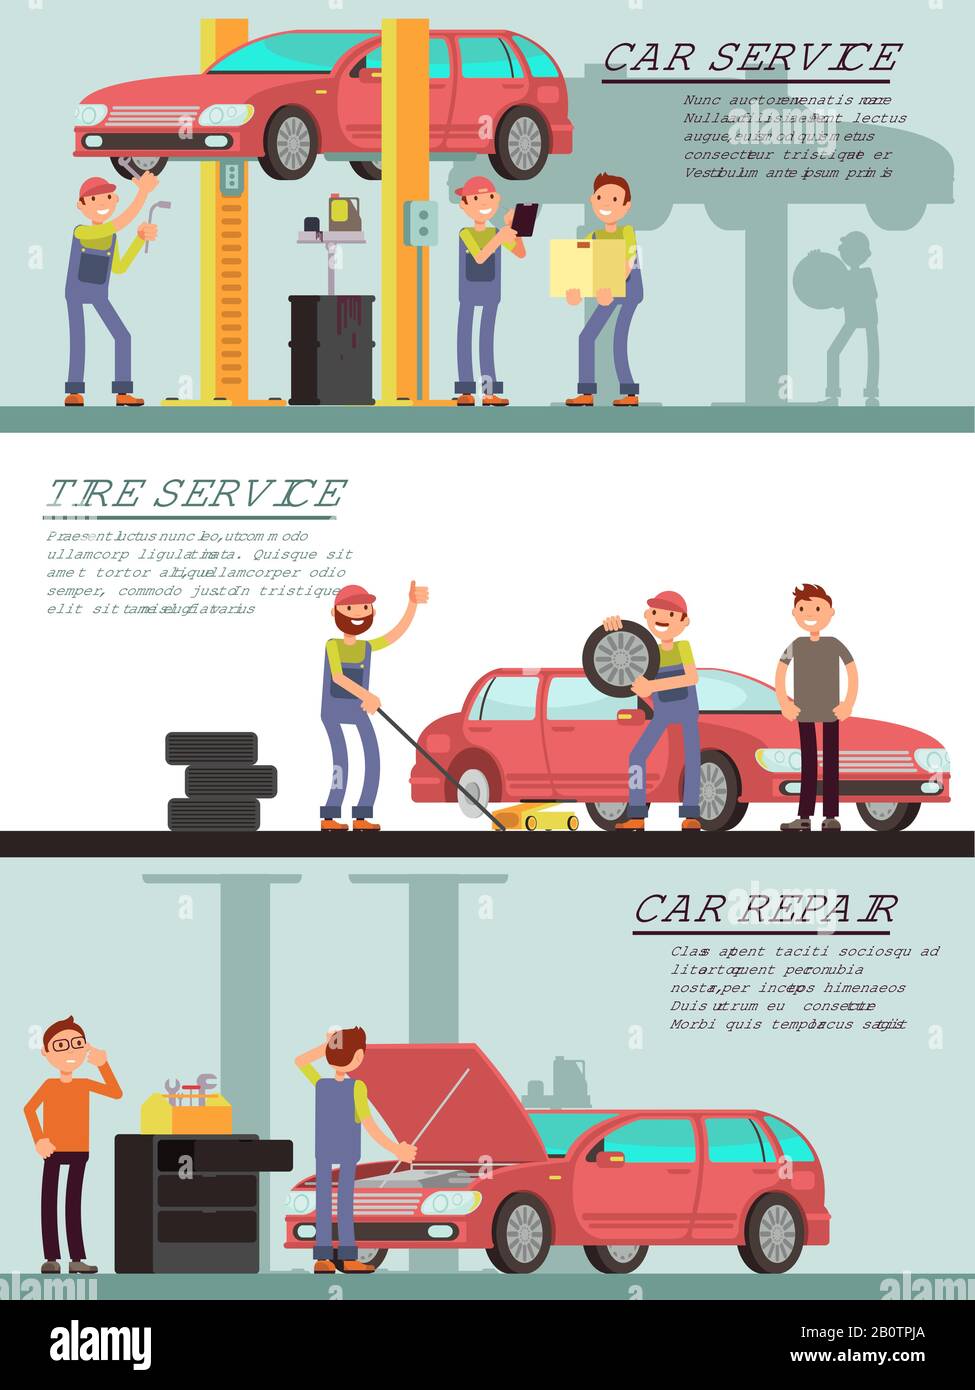 Servizi auto e garag auto vector marketing banner con vignetta meccanico lavoratore. Illustrazione della manutenzione per il trasporto di riparazione e la manutenzione degli pneumatici Illustrazione Vettoriale